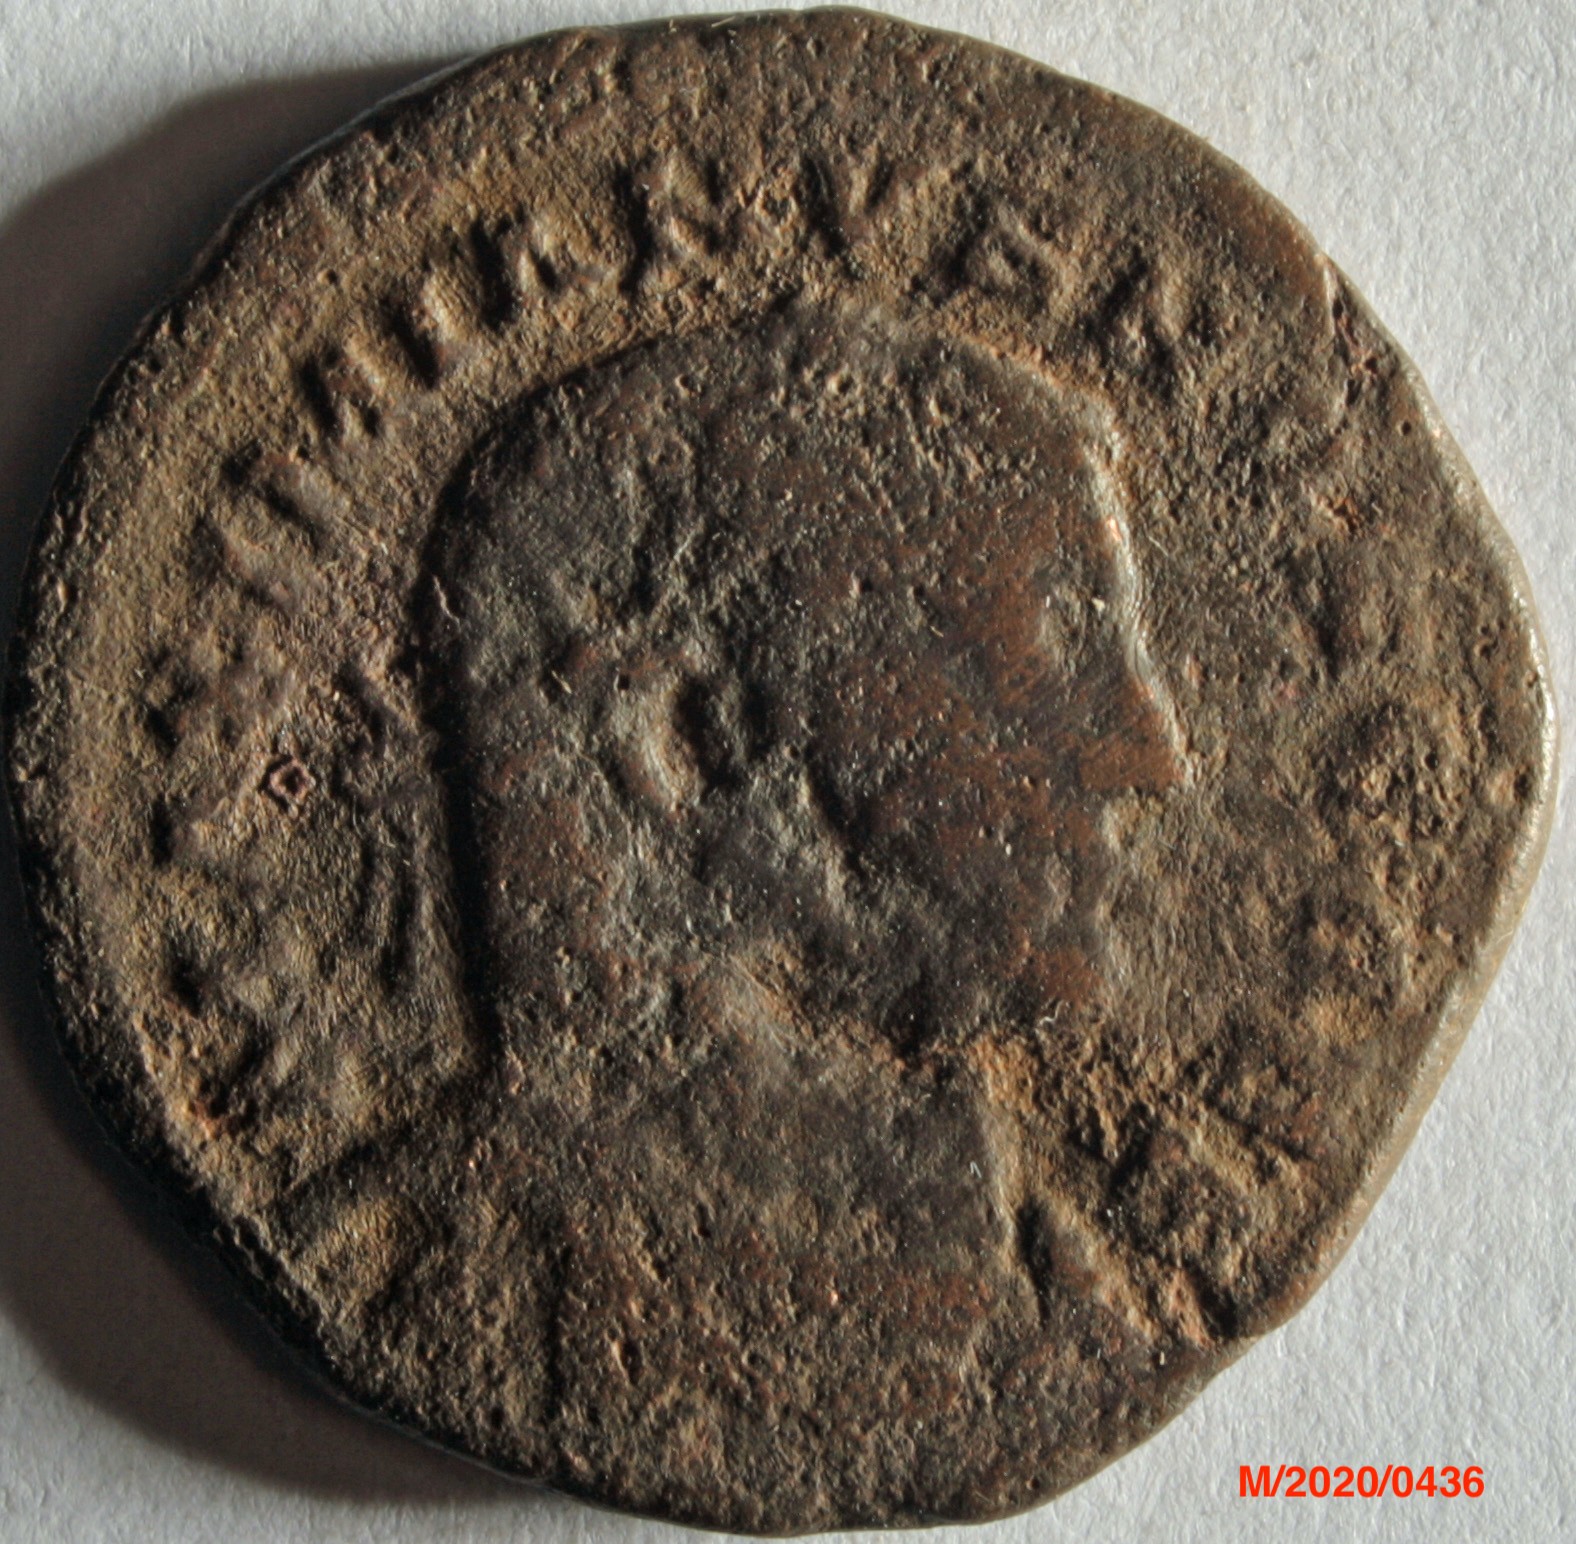 Römische Münze, Nominal Follis, Prägeherr unbekannt, Prägeort nicht bestimmbar, Original (Museumsgesellschaft Bad Dürkheim e.V. CC BY-NC-SA)